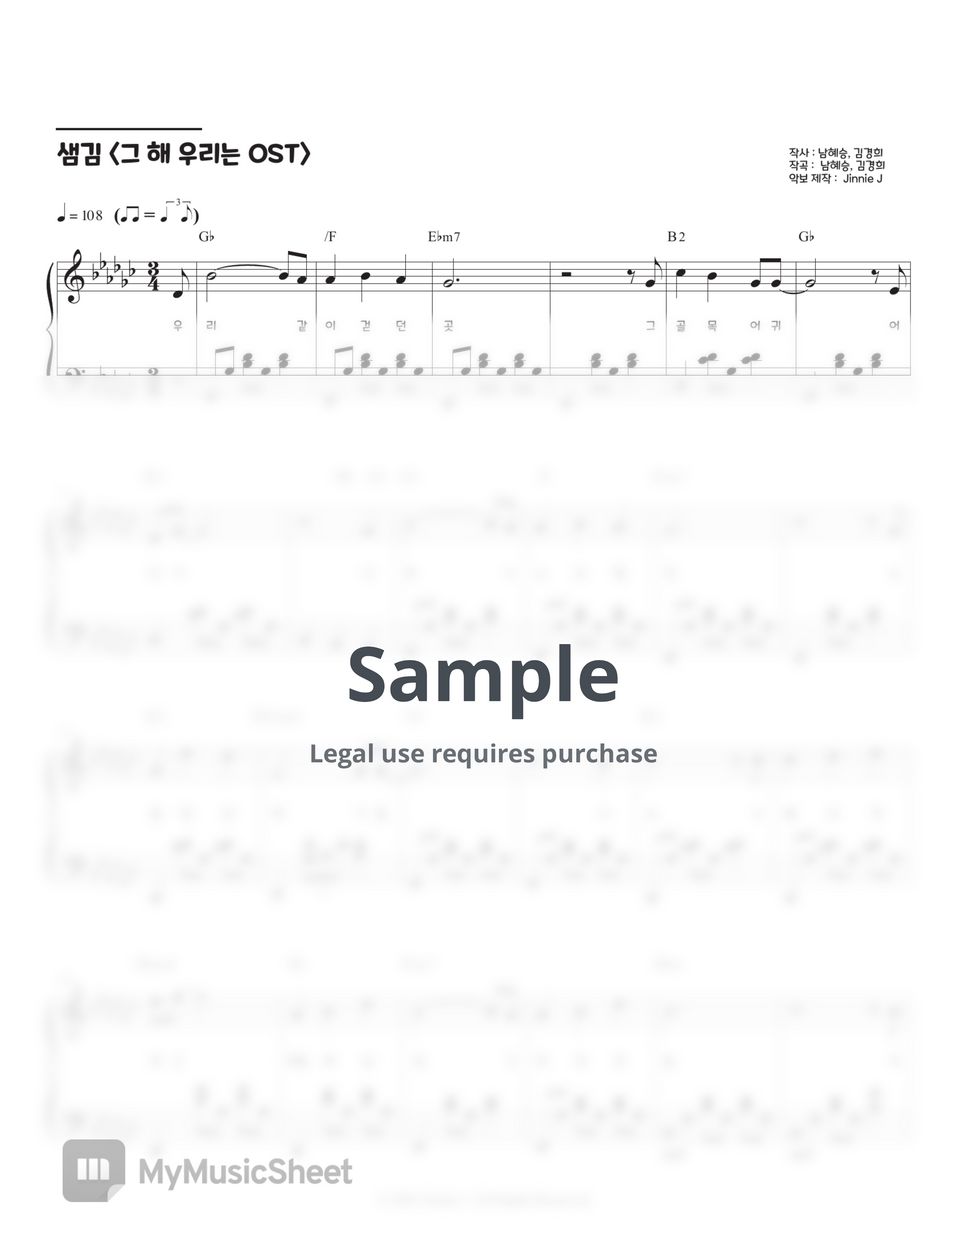 Sam Kim - Summer Rain (Our Beloved Summer OST) (Gb key, G key) by Jinnie J